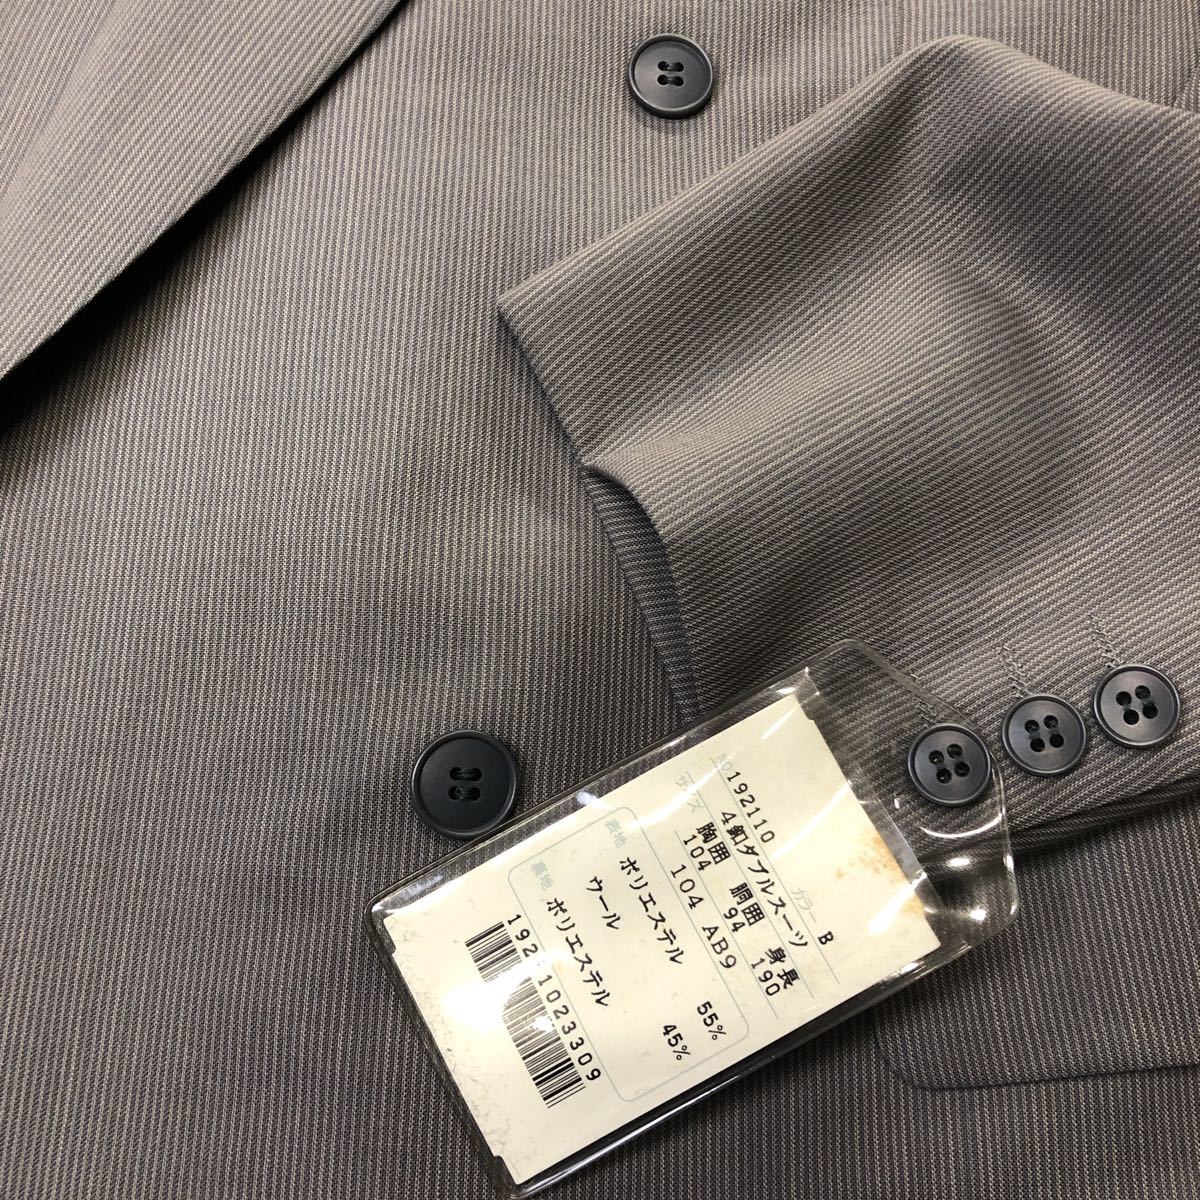  новый товар не использовался с биркой очень большой размер двубортный костюм AB9 серый серия o- Kid Mist в тонкую полоску редкий размер сделано в Японии no- Benz 2 tuck 